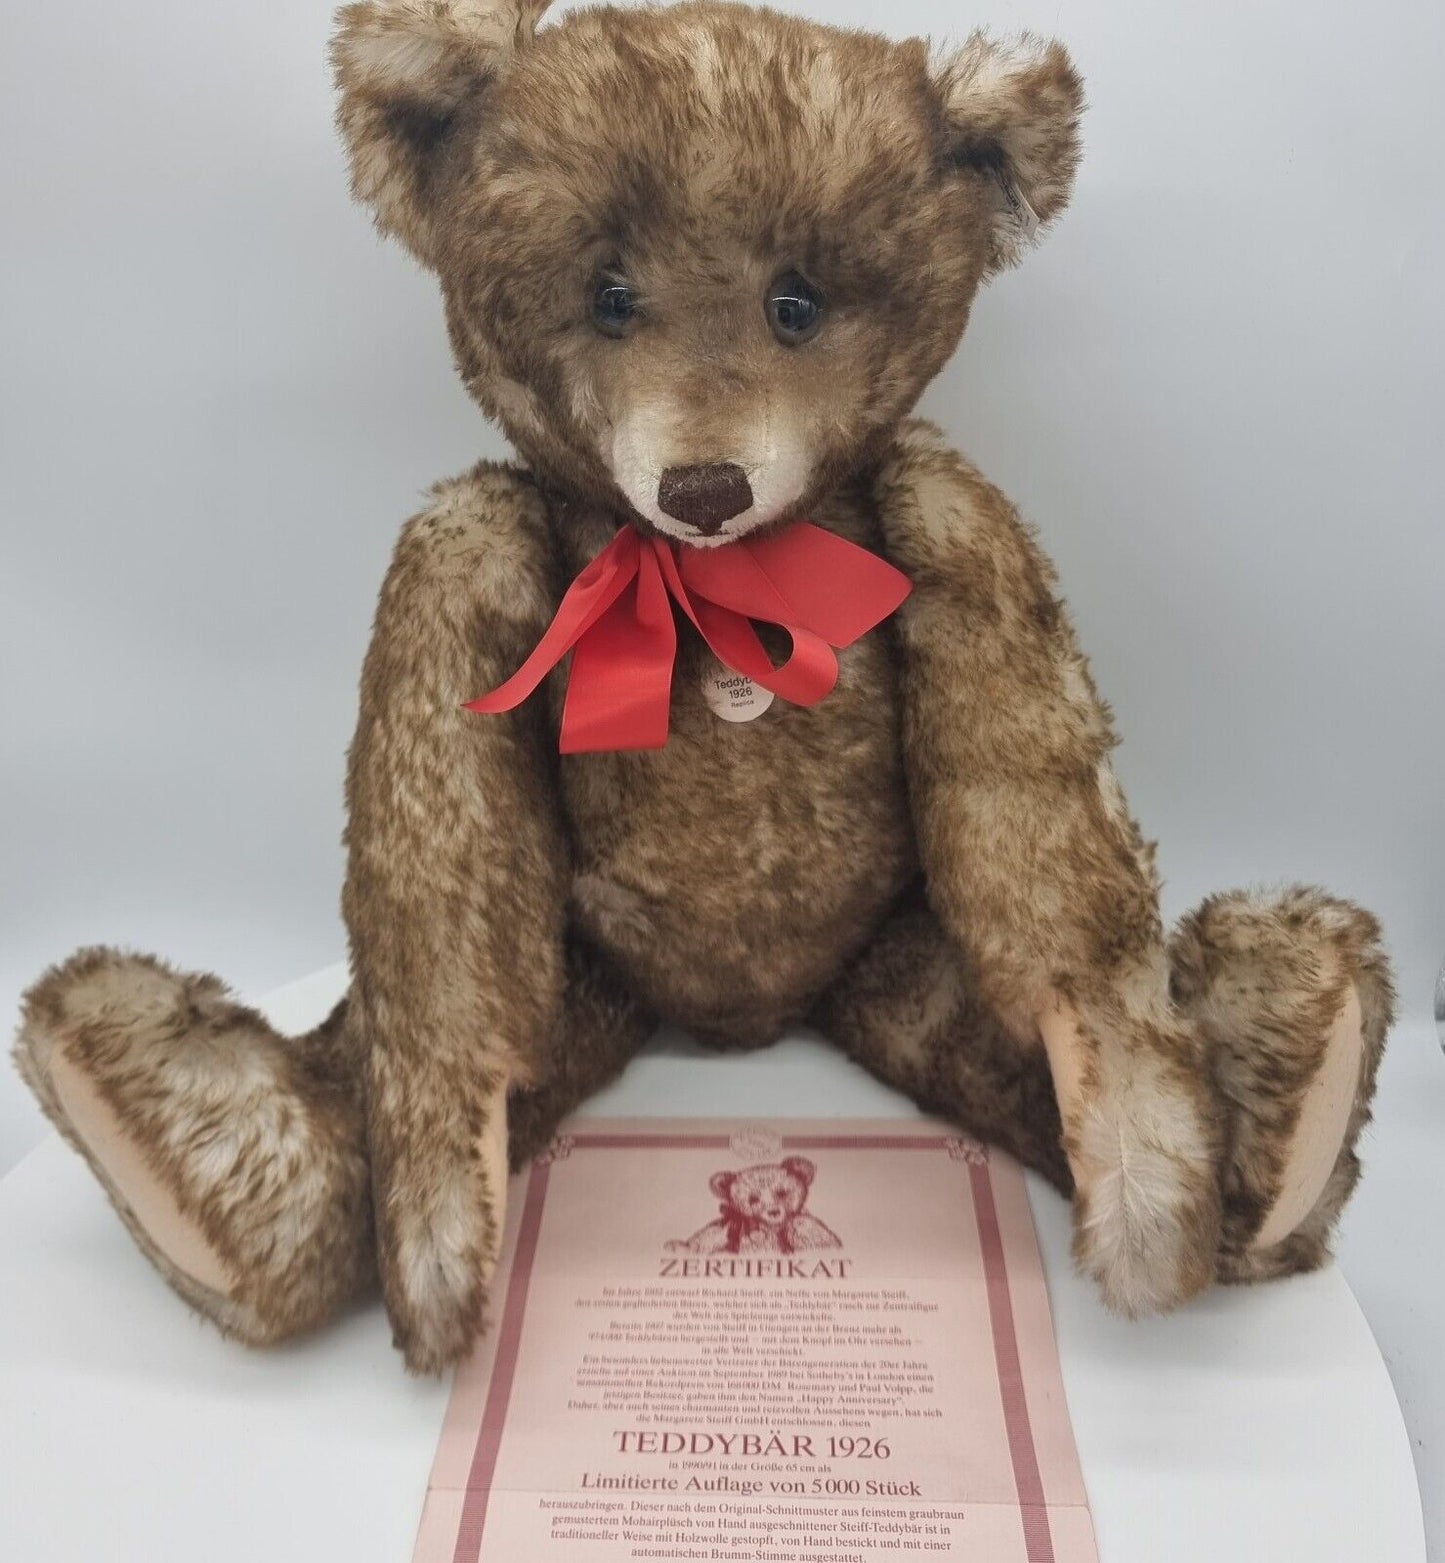 Steiff 407239 Teddybär 1926 Replica 65 cm limitiert 5000 grau-braun Zertifikat